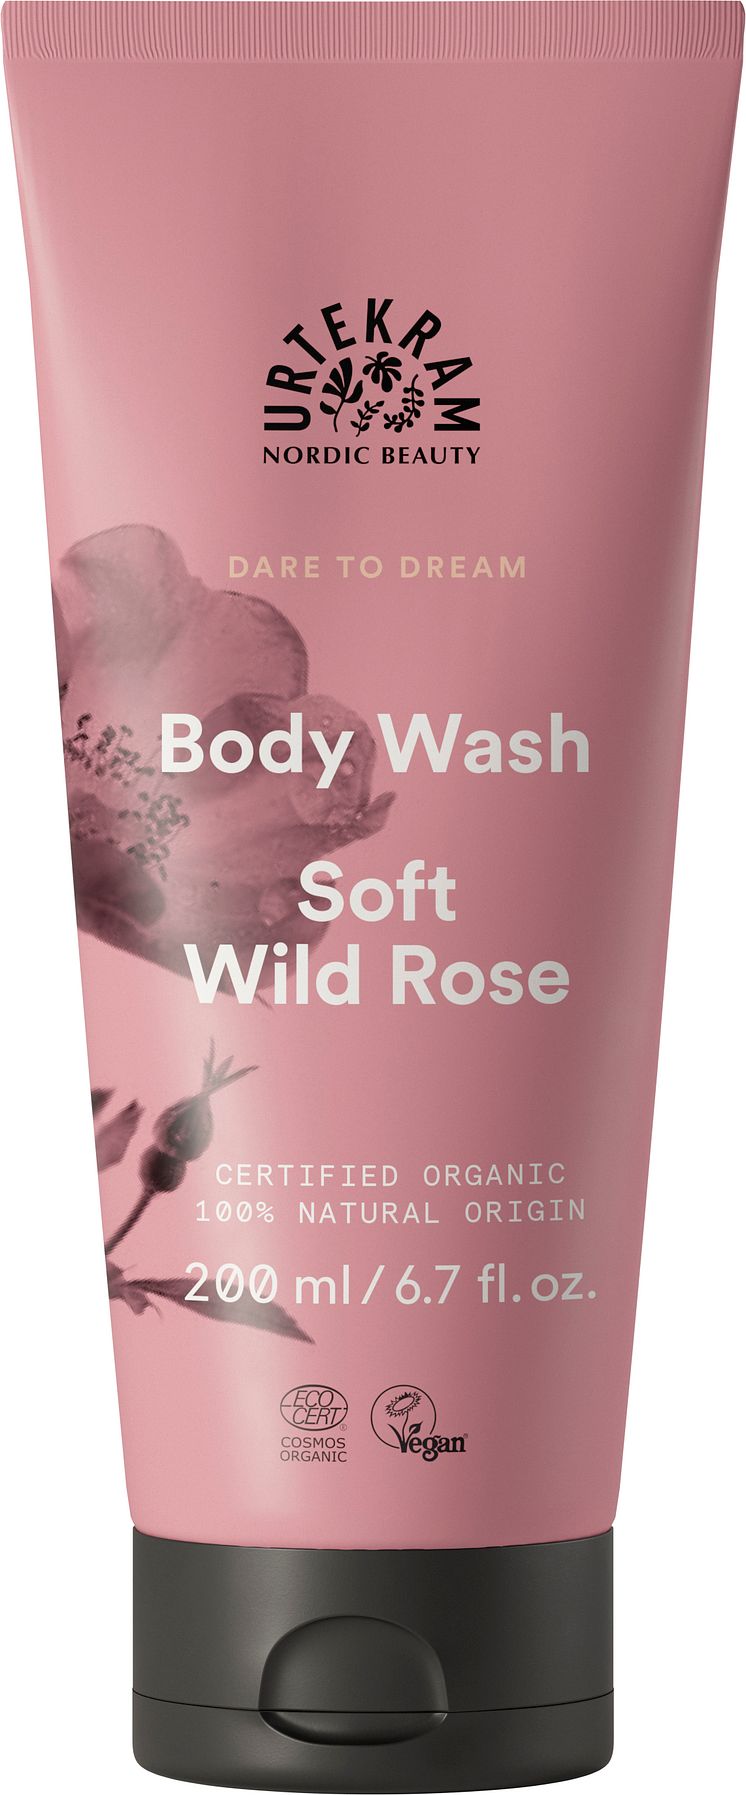 Urtekram Beauty Dare to Dream Body Wash